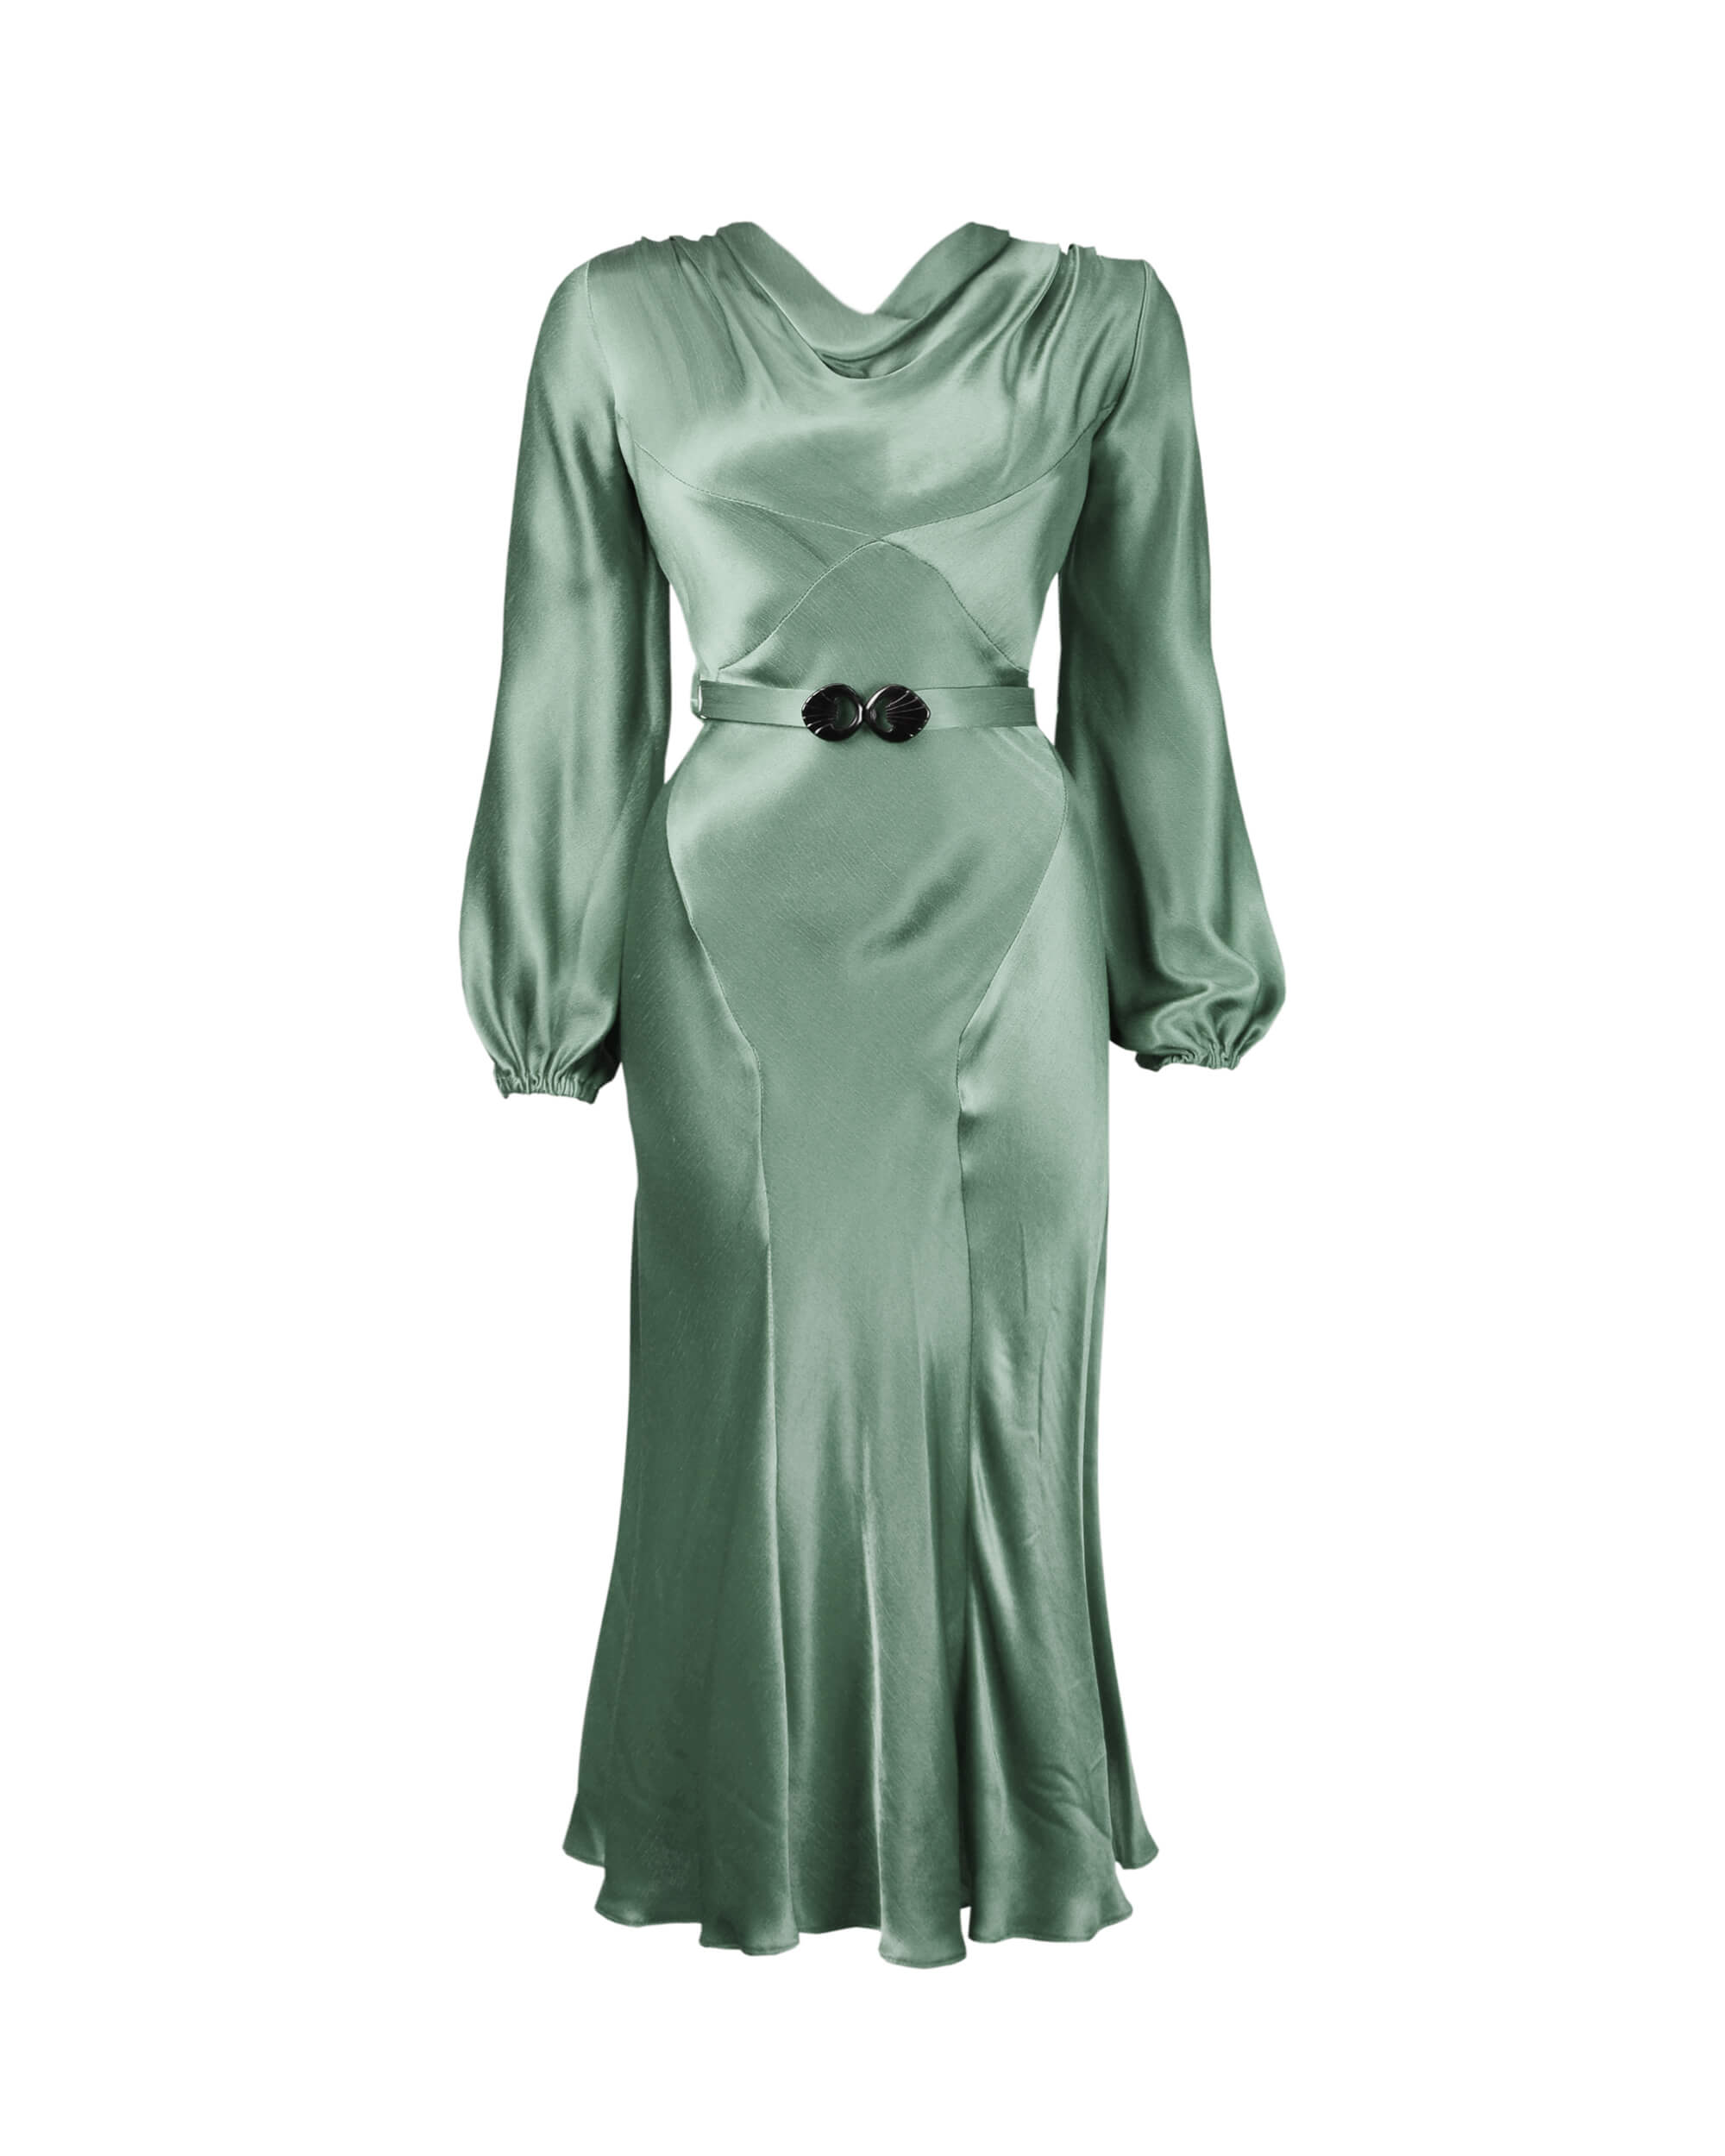 30s Joanie Bias Cut Dress - Sage Green Satin